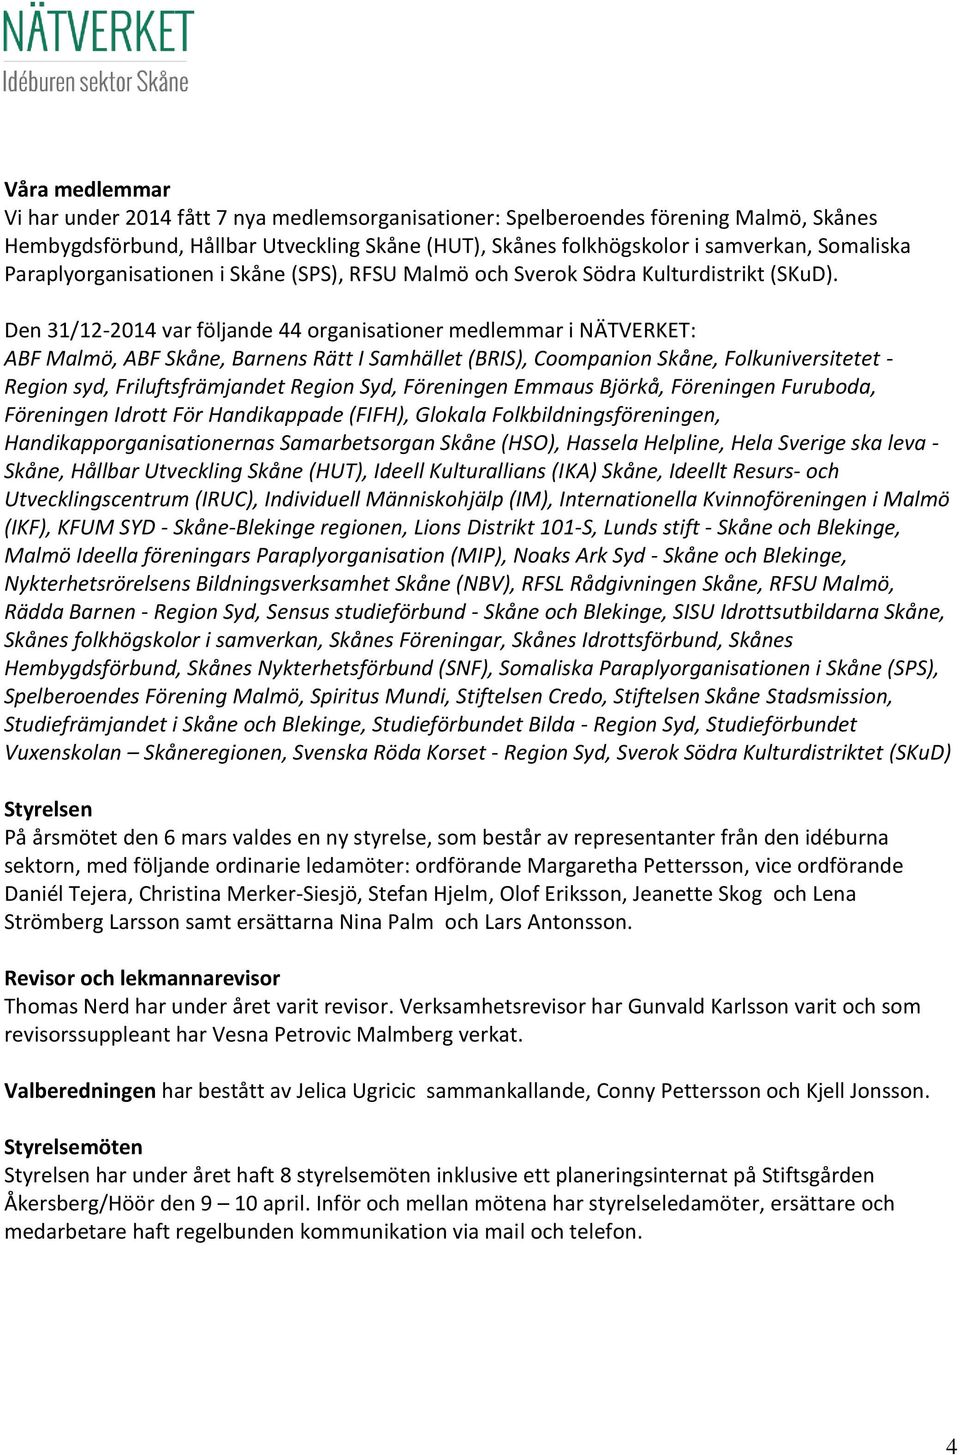 Den 31/12-2014 var följande 44 organisationer medlemmar i NÄTVERKET: ABF Malmö, ABF Skåne, Barnens Rätt I Samhället (BRIS), Coompanion Skåne, Folkuniversitetet - Region syd, Friluftsfrämjandet Region